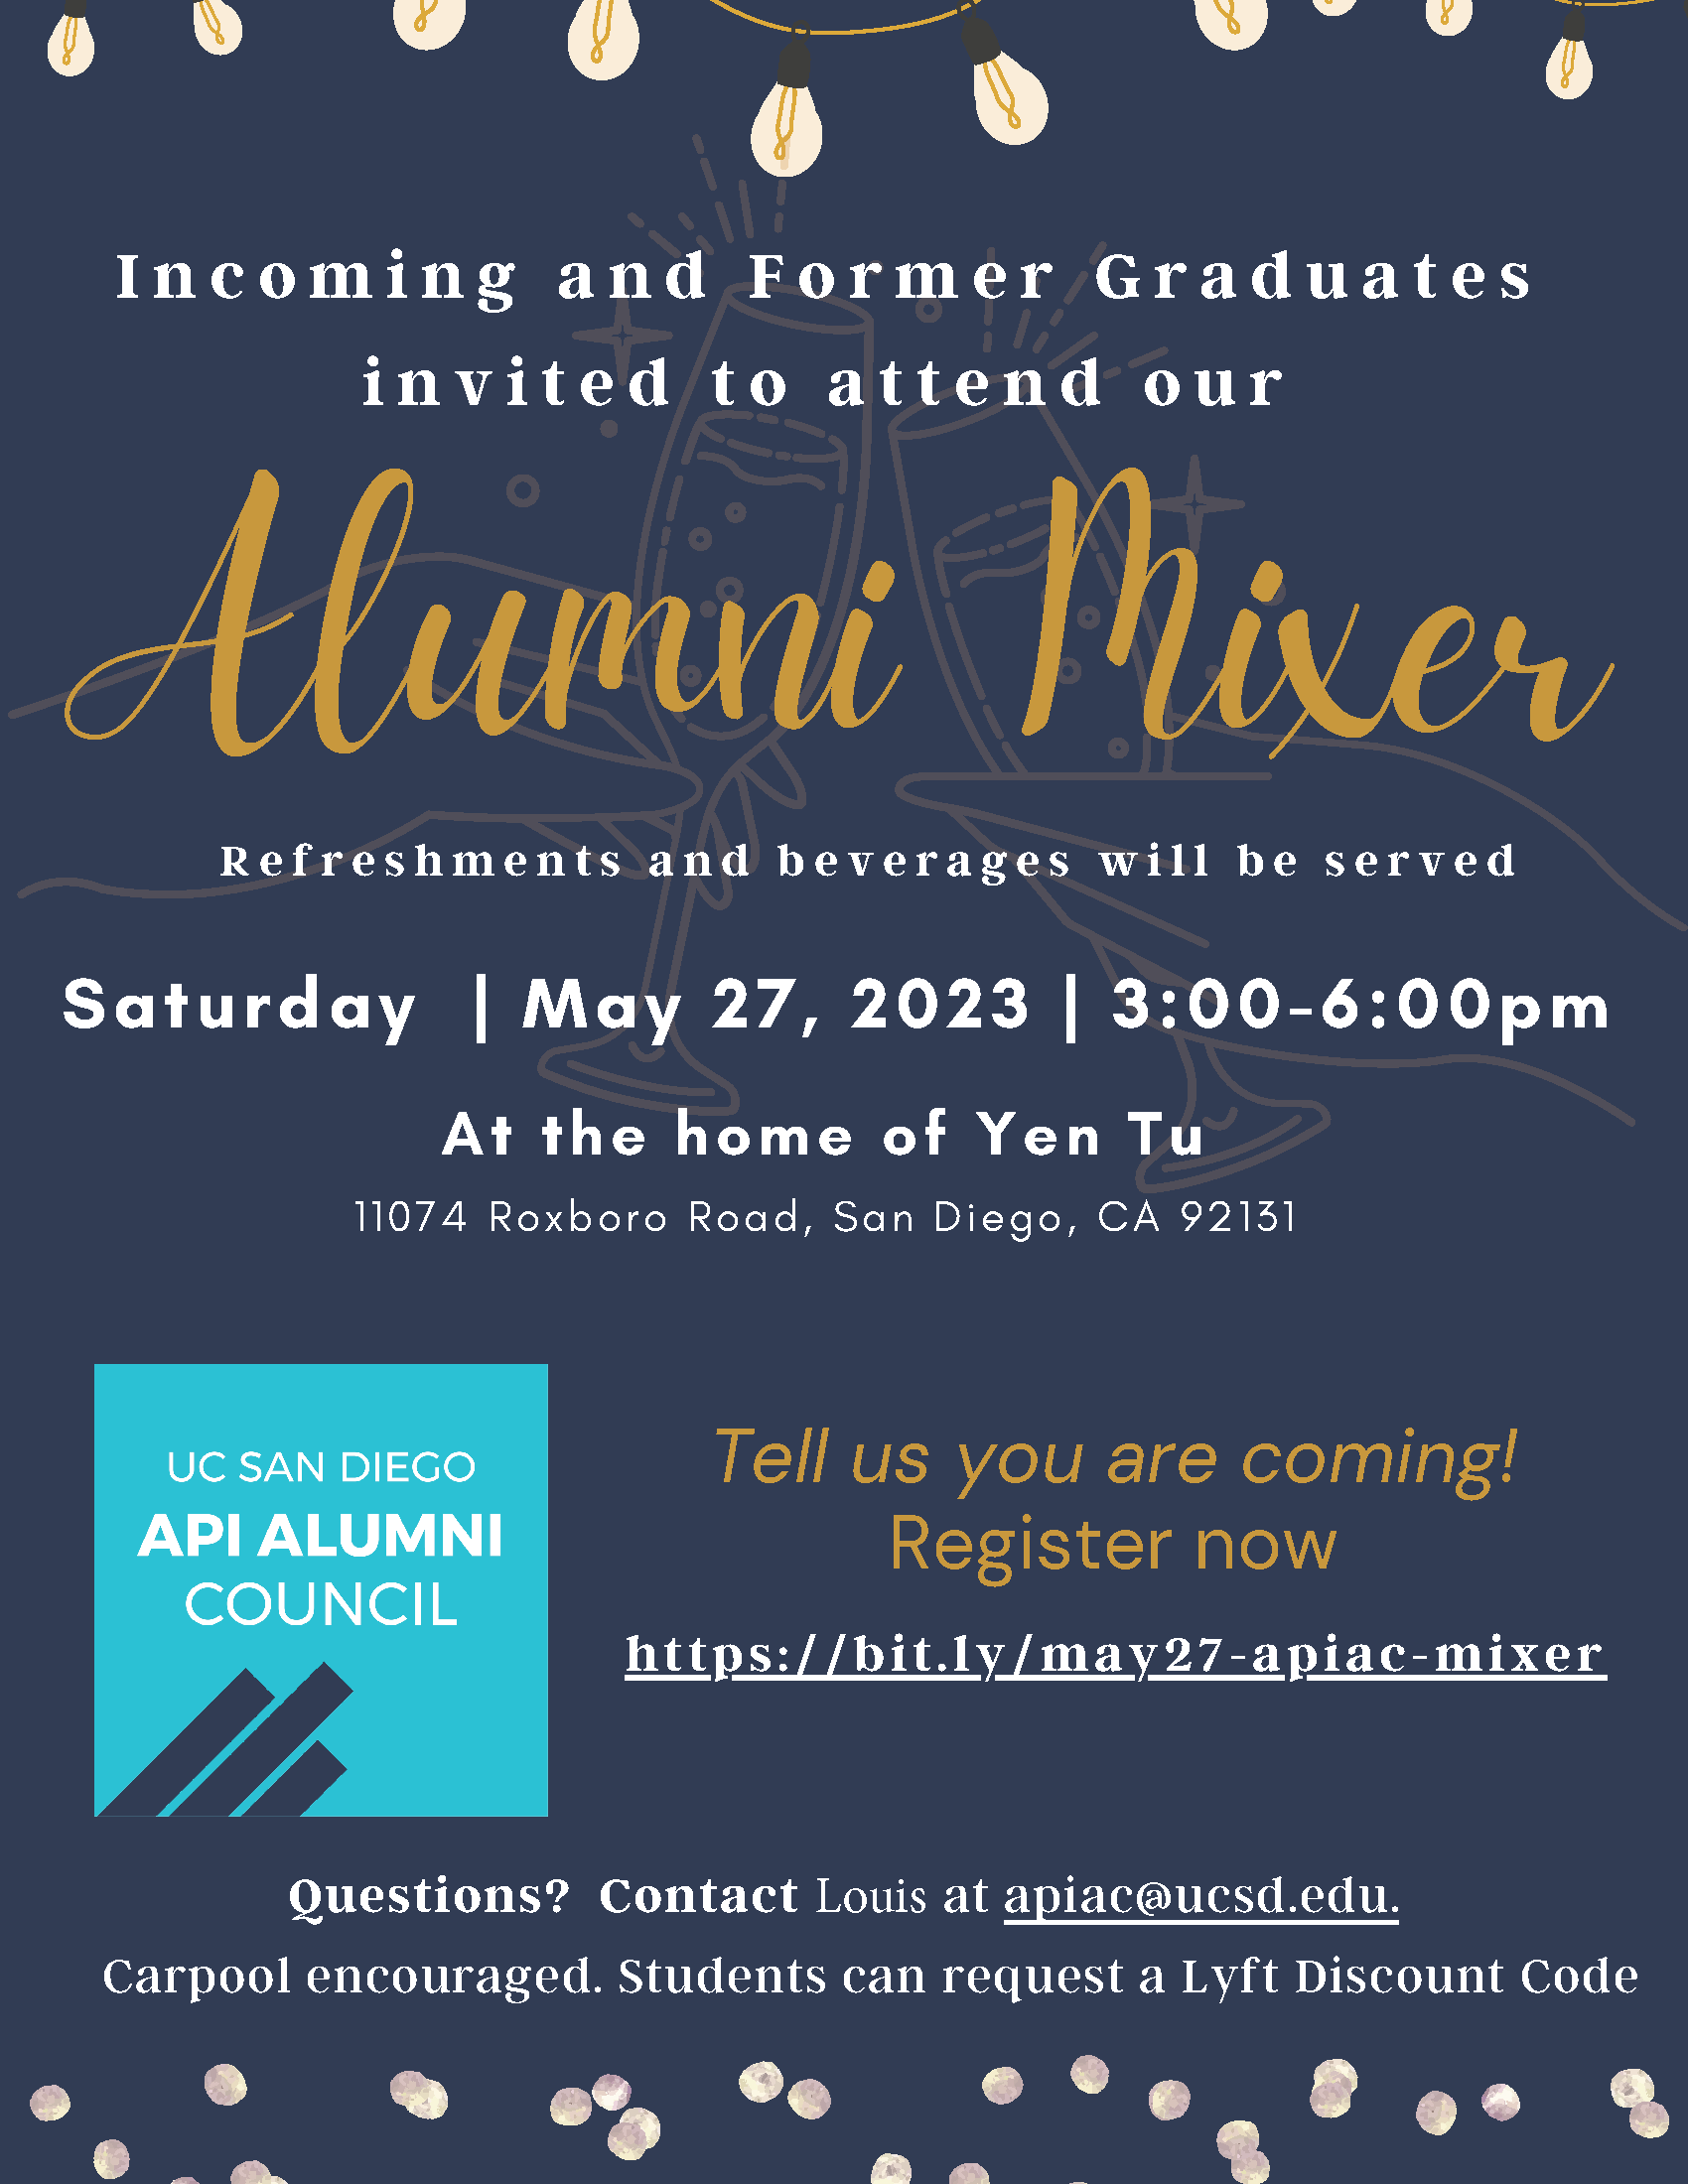 UCSD-API-Alumni-Council-Mixer-5.27.23.png